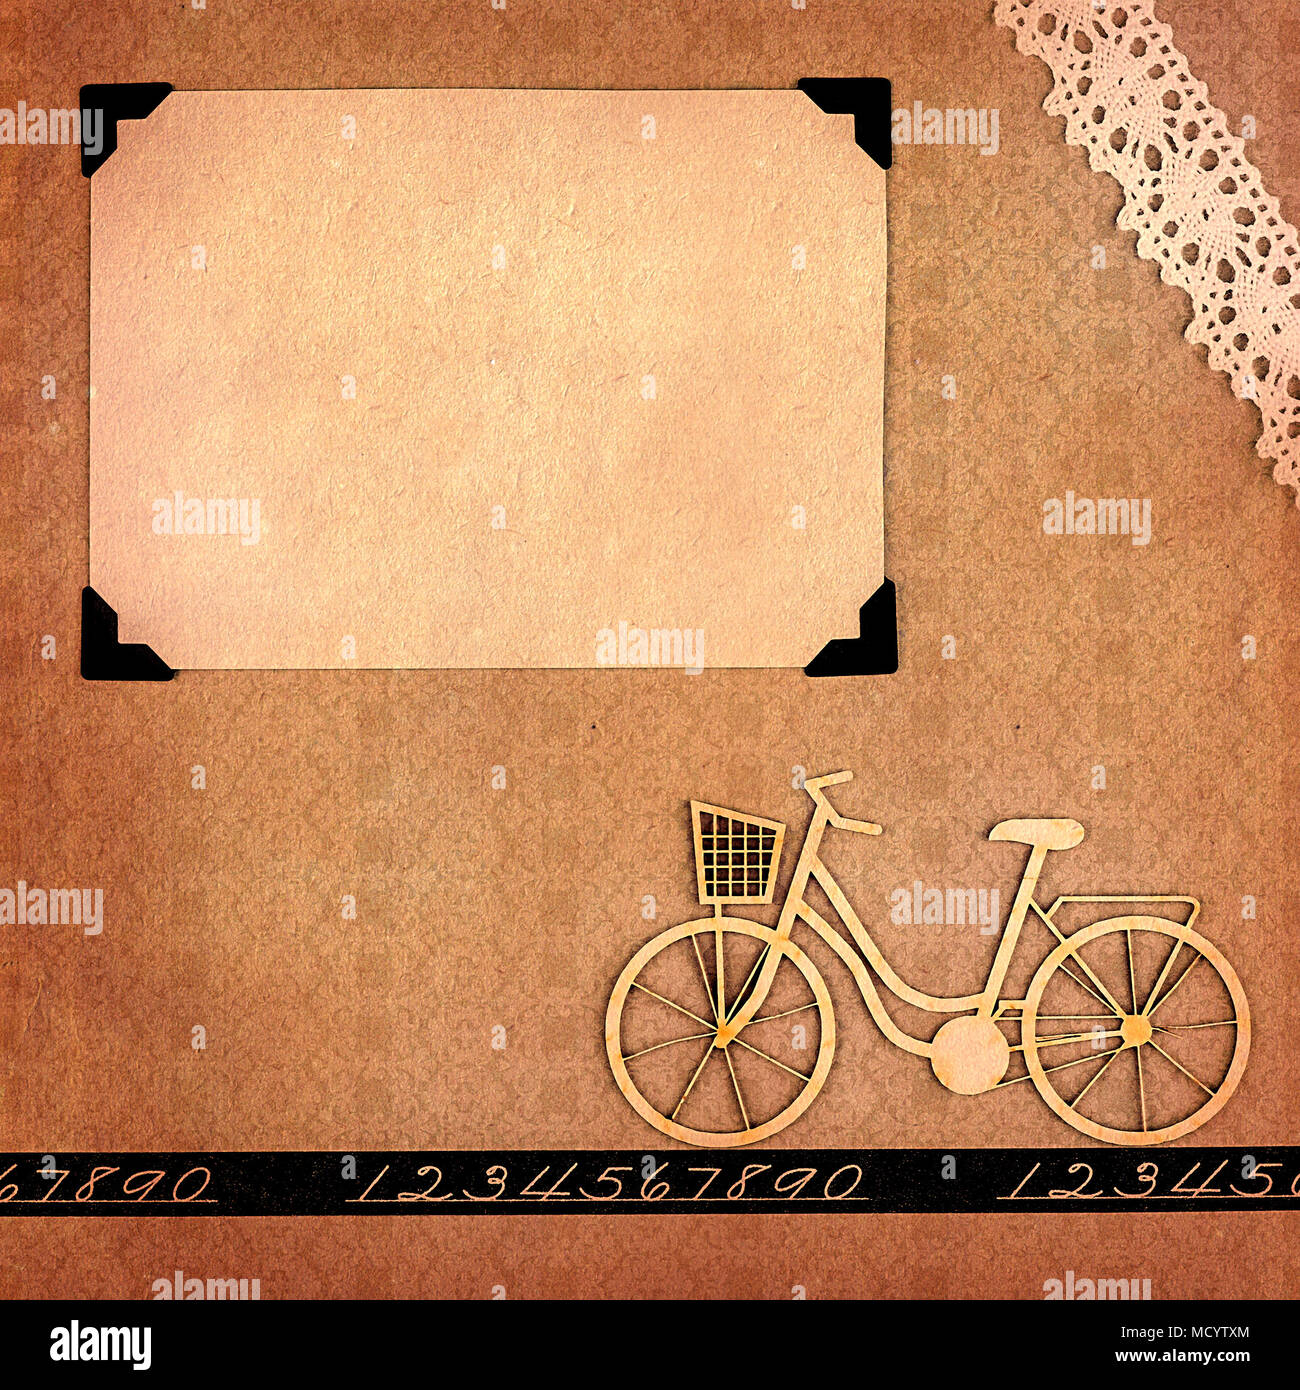 Pagina da una in stile retro album fotografico con balnk photo frame e rottami di bicicletta Foto Stock